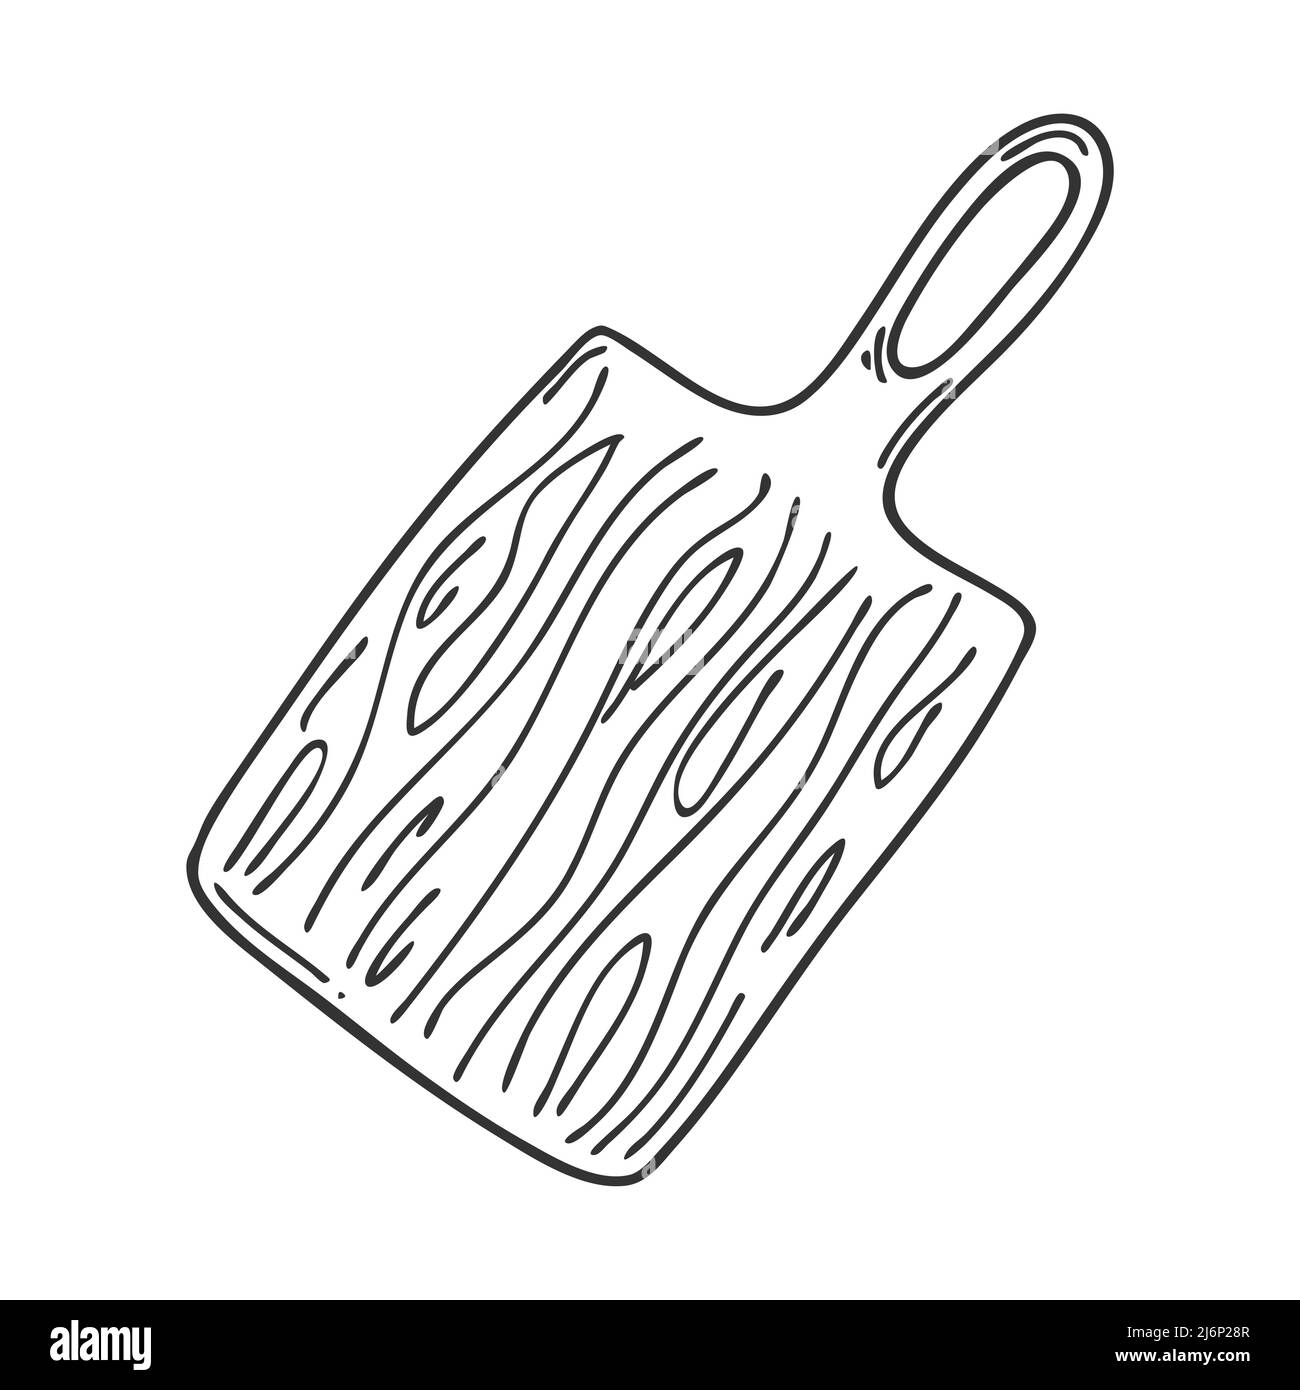 Ilustración de diseño de utensilios de cocina de madera aislado sobre fondo  blanco.